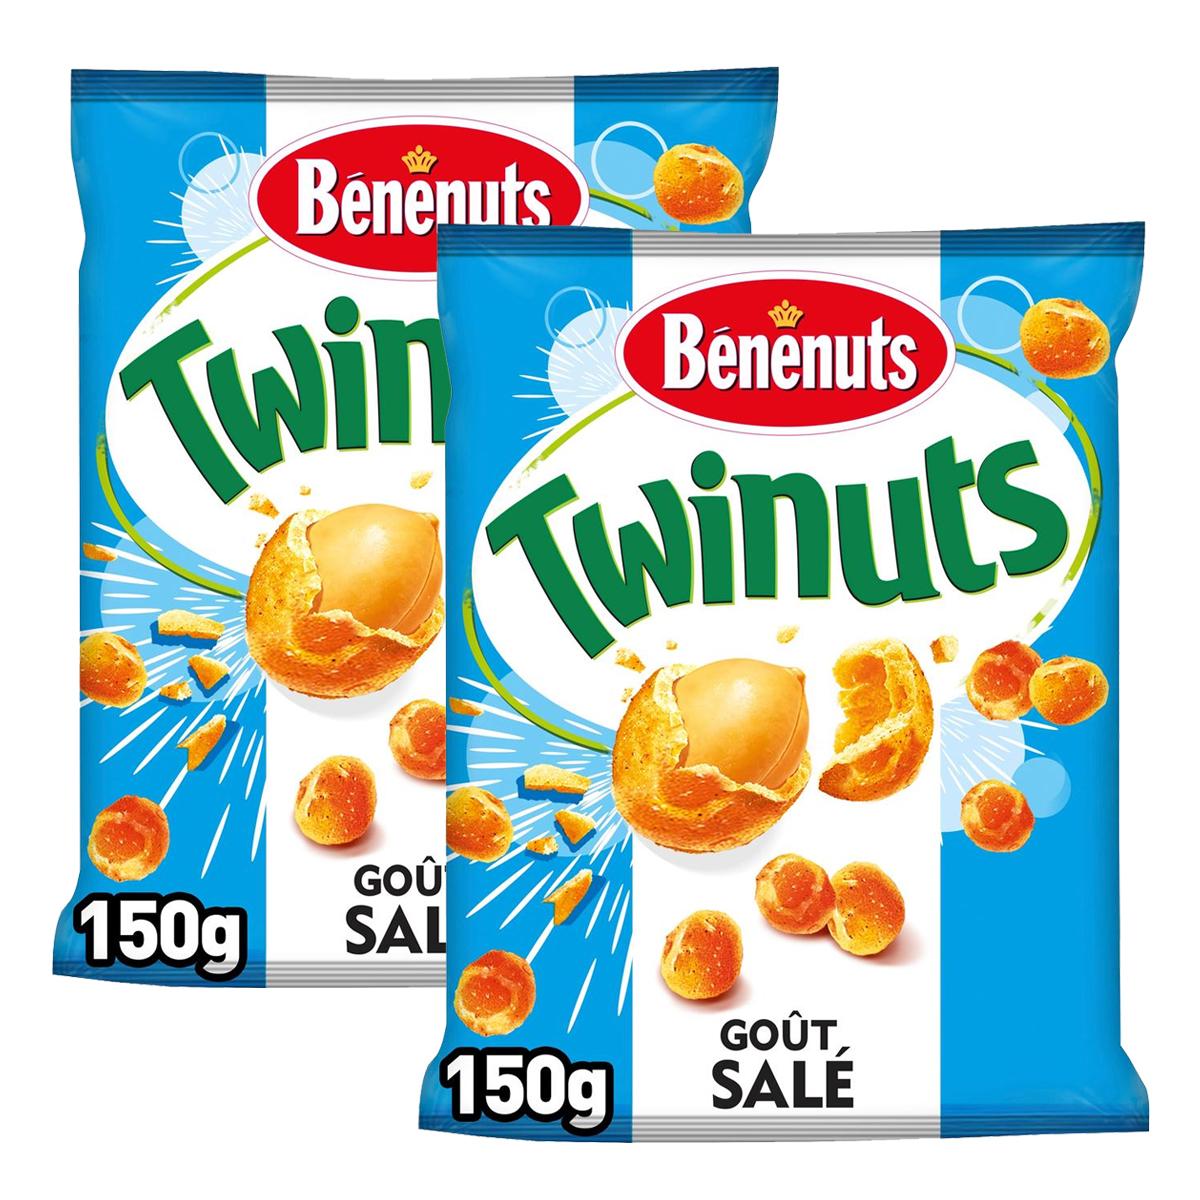 Benenuts twinuts 150g